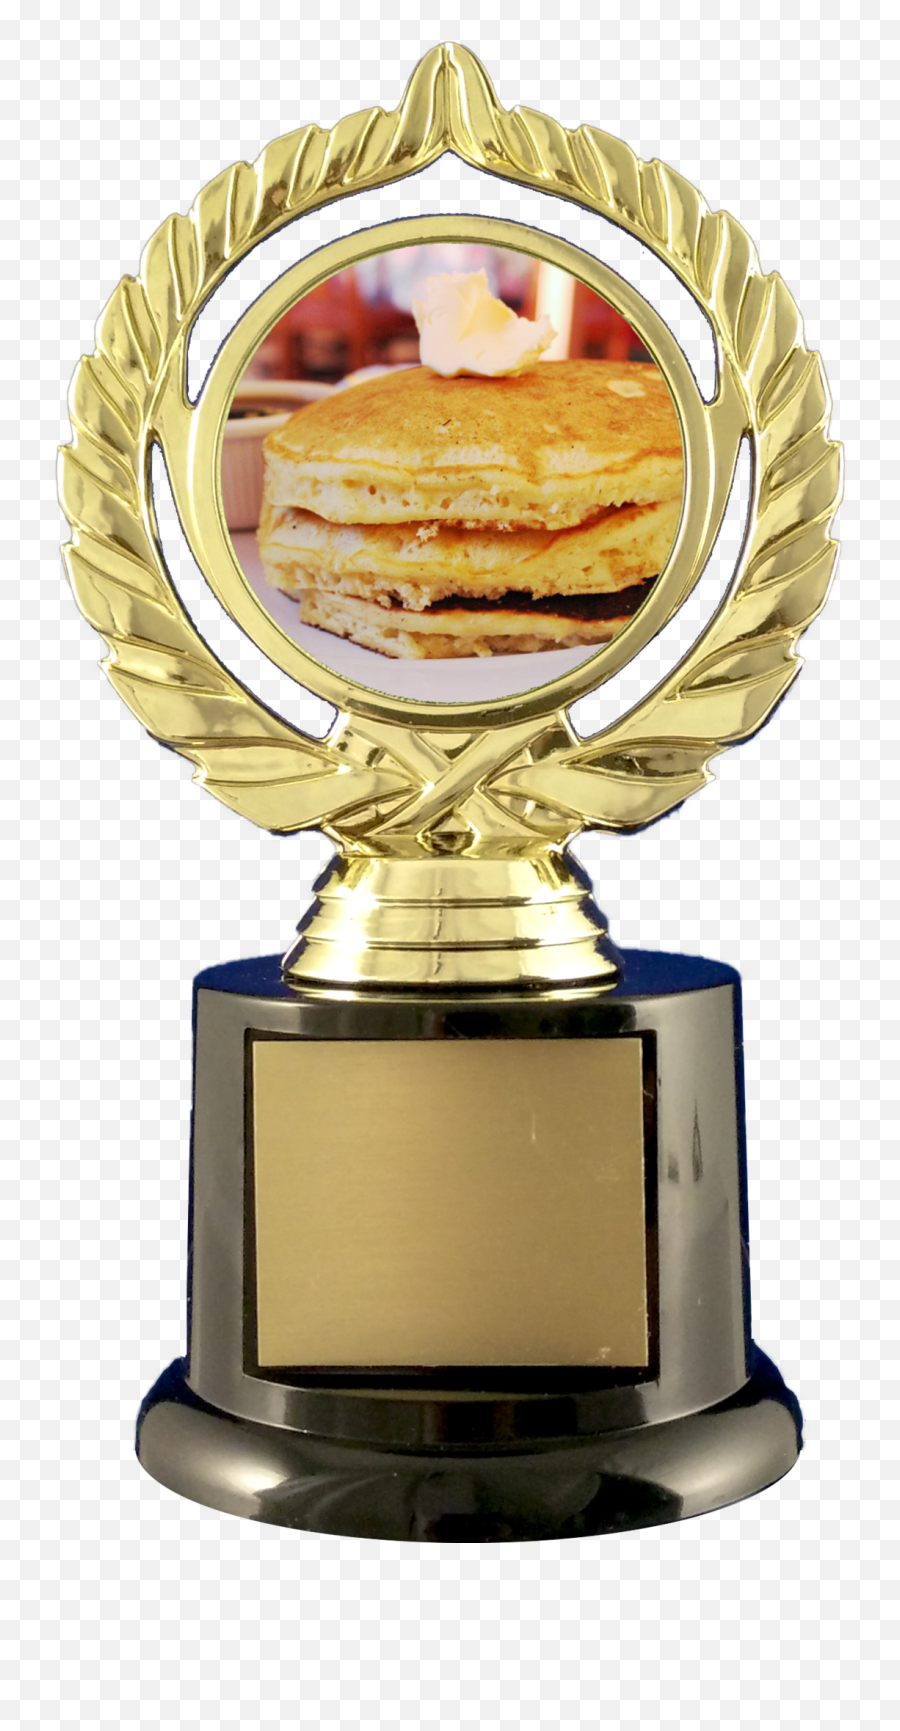 Pancake Trophy On Black Round Base - Trophy Emoji,Emoji Pancake Pan